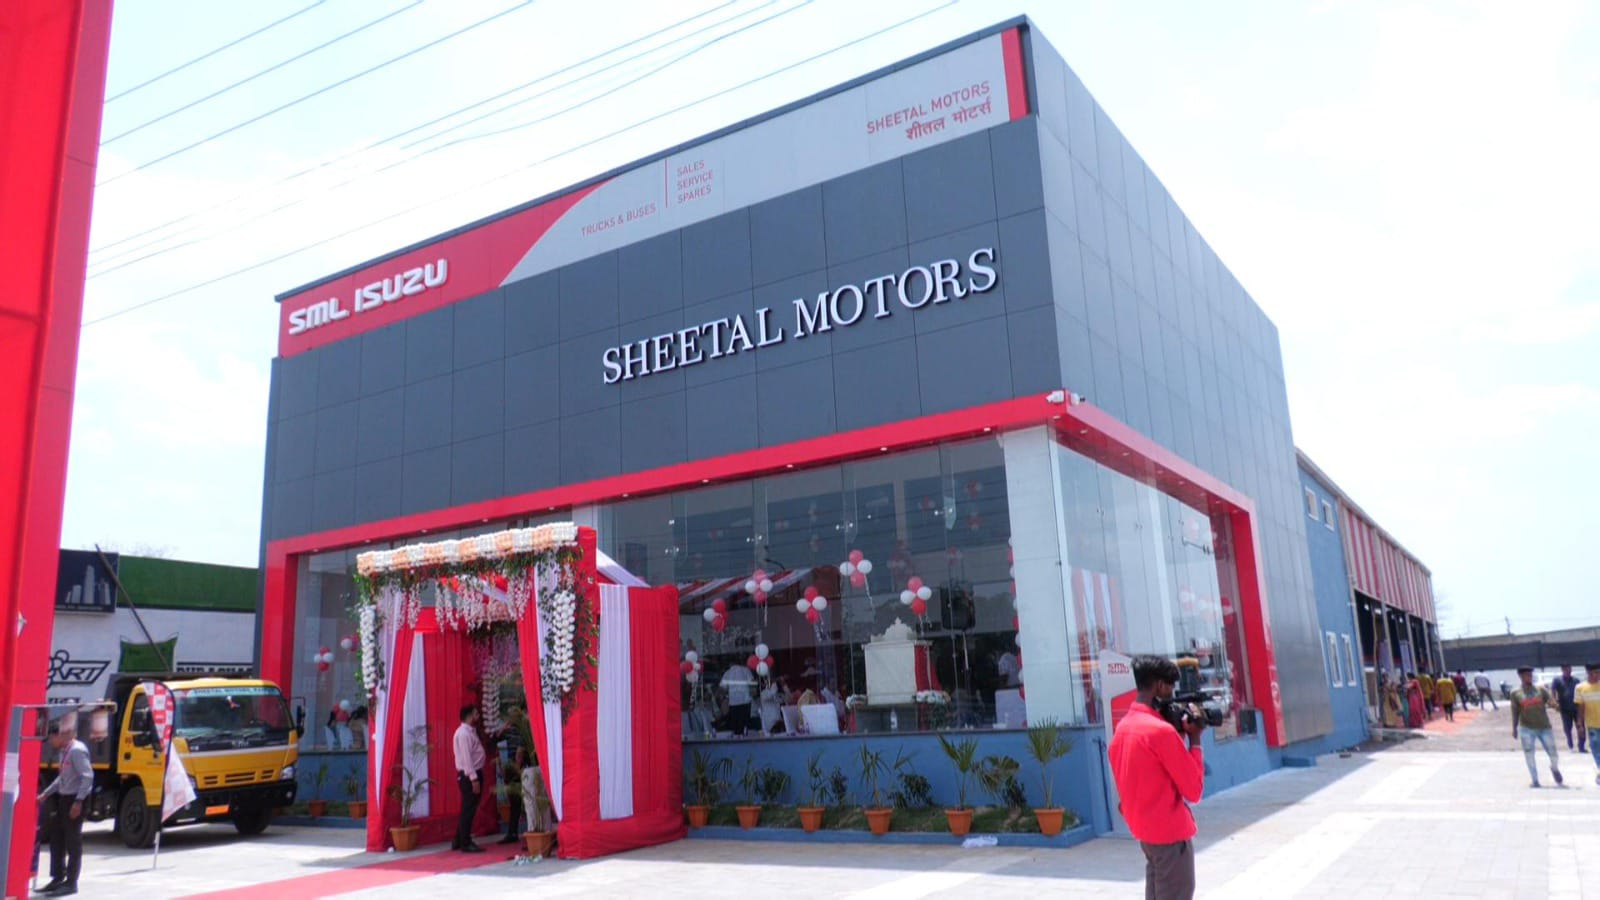 SML ISUZU Dealership : रायपुर में एसएमएल ईसुज़ू डीलरशिप का हुआ शुभारंभ